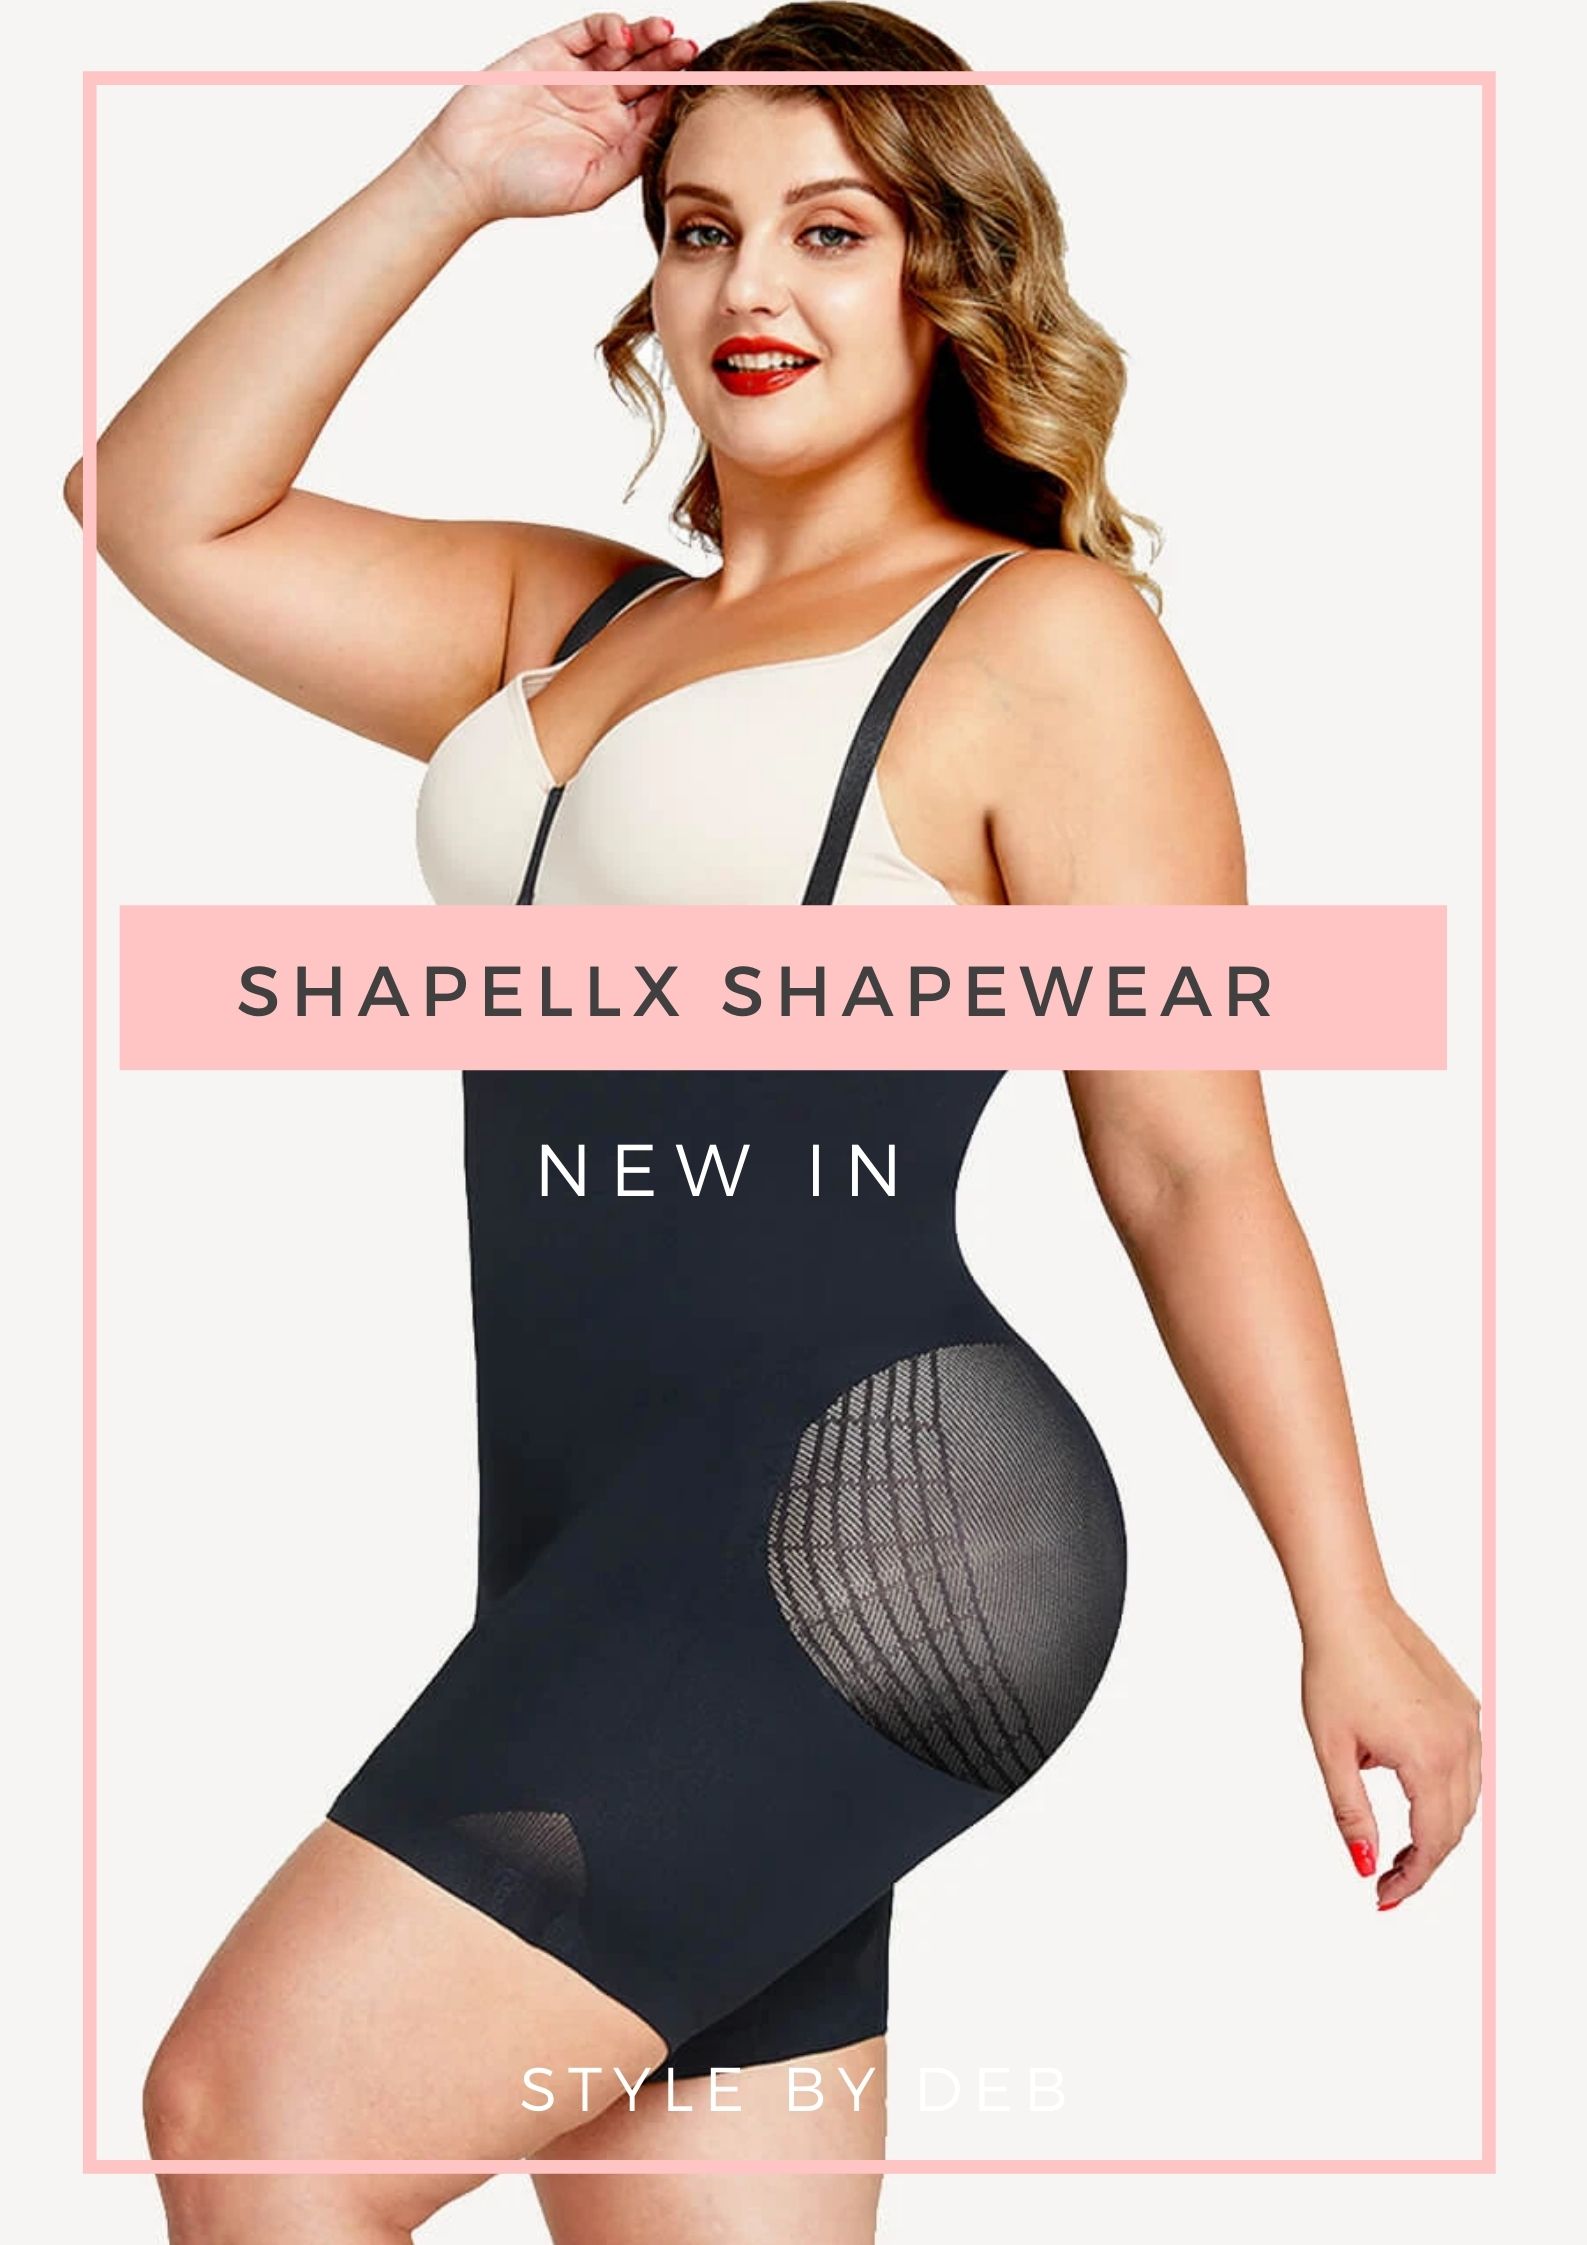 Shapellx shapewear